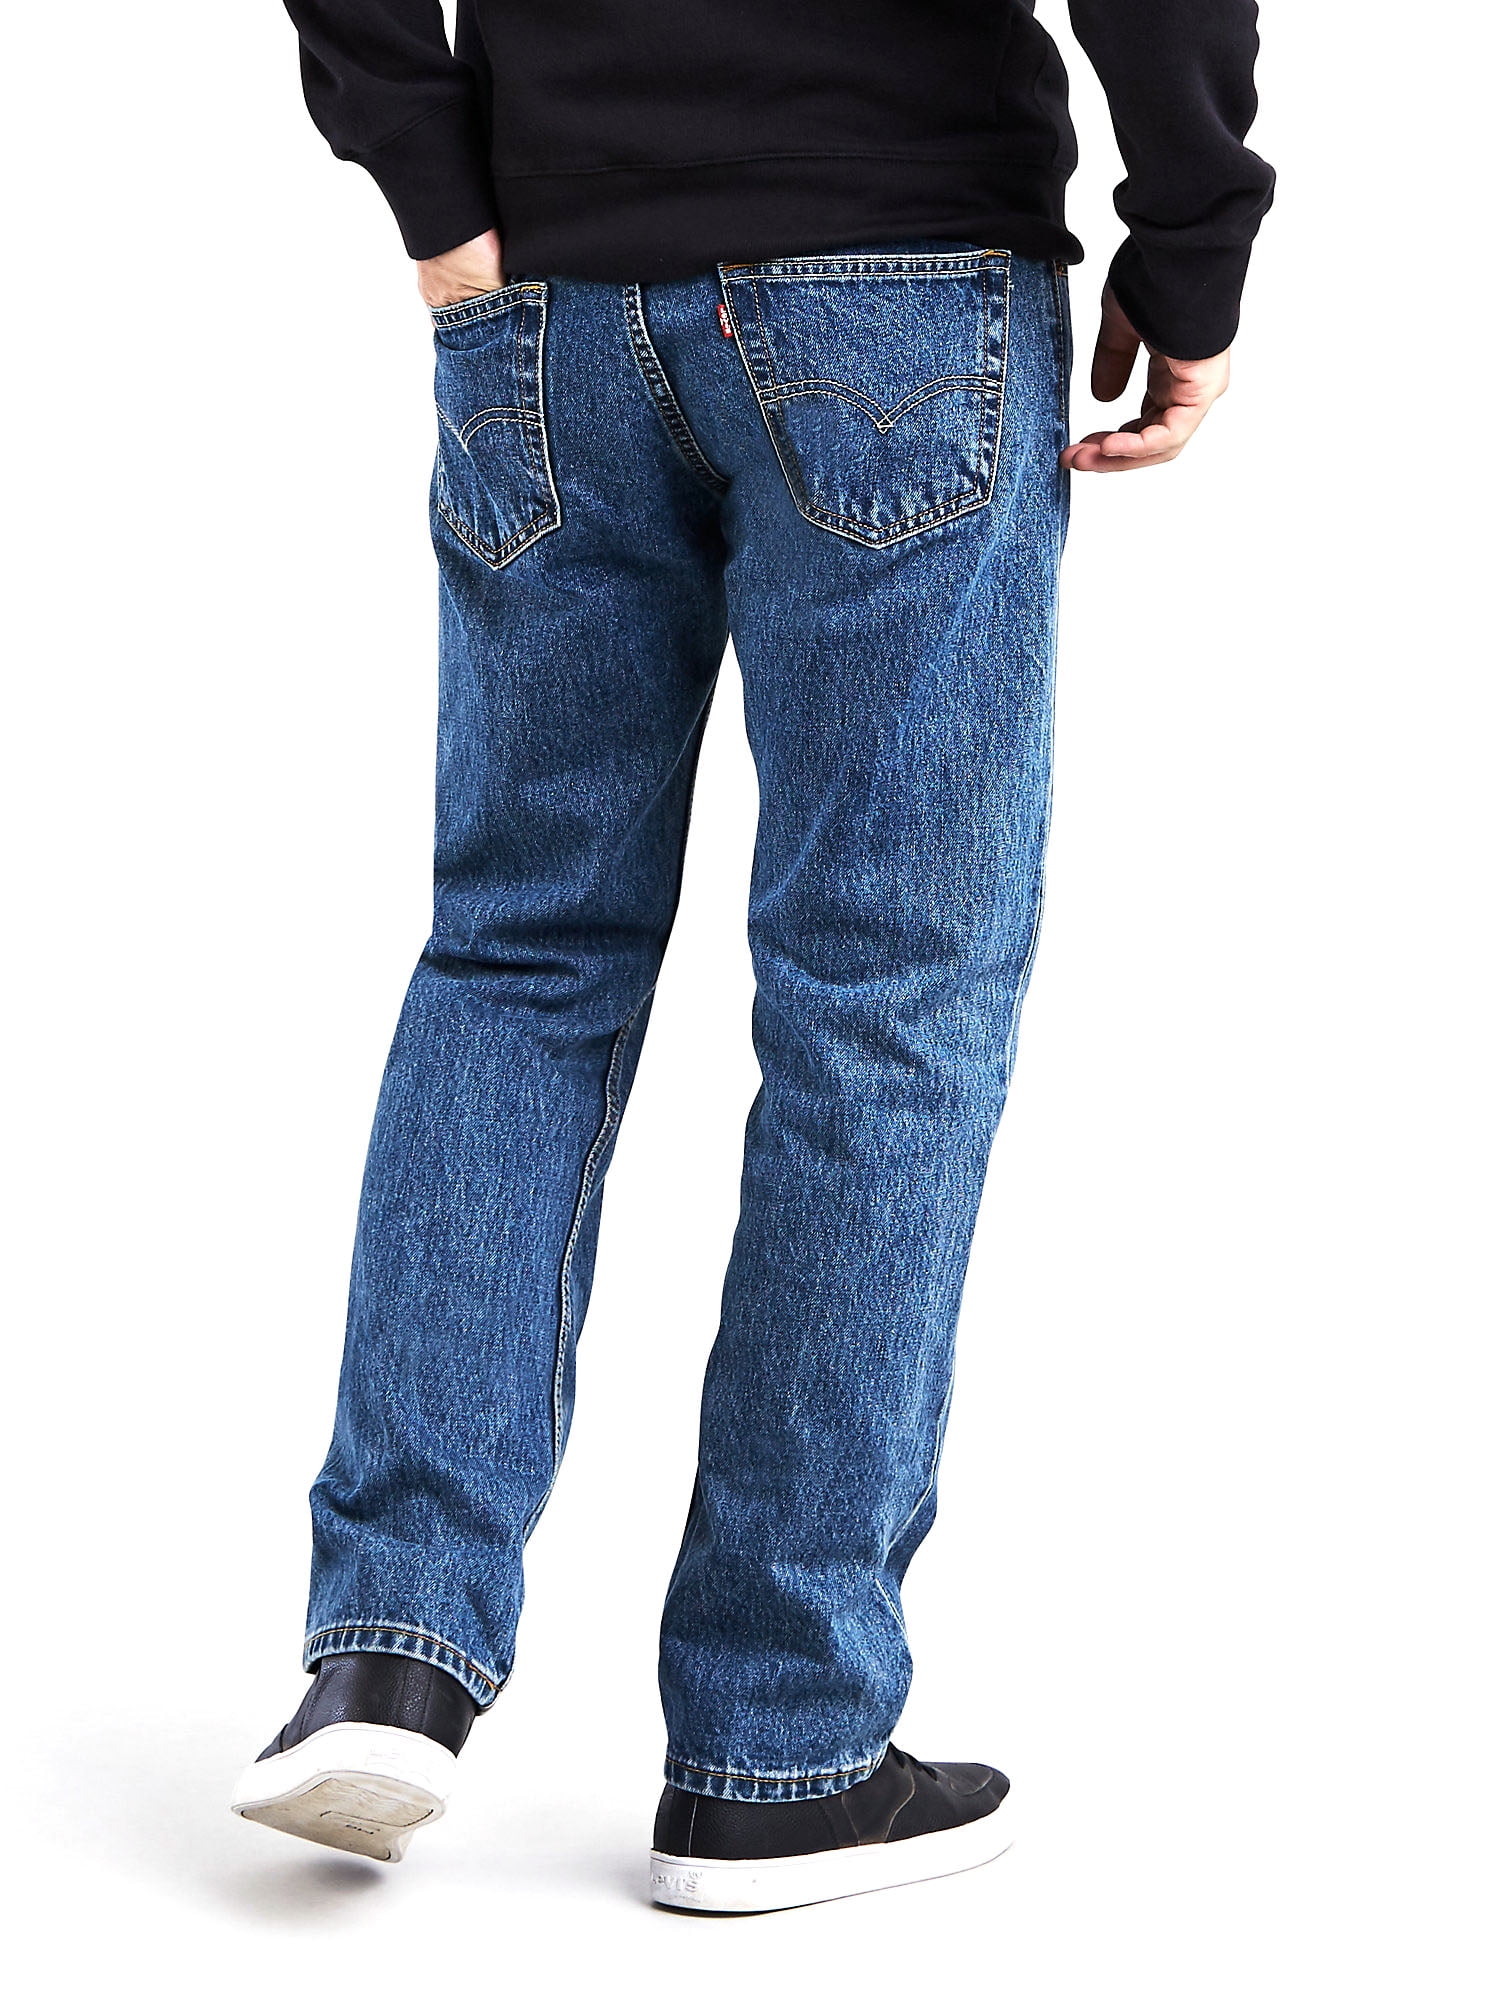 Levis Men's 505 Regular Fit Jeans